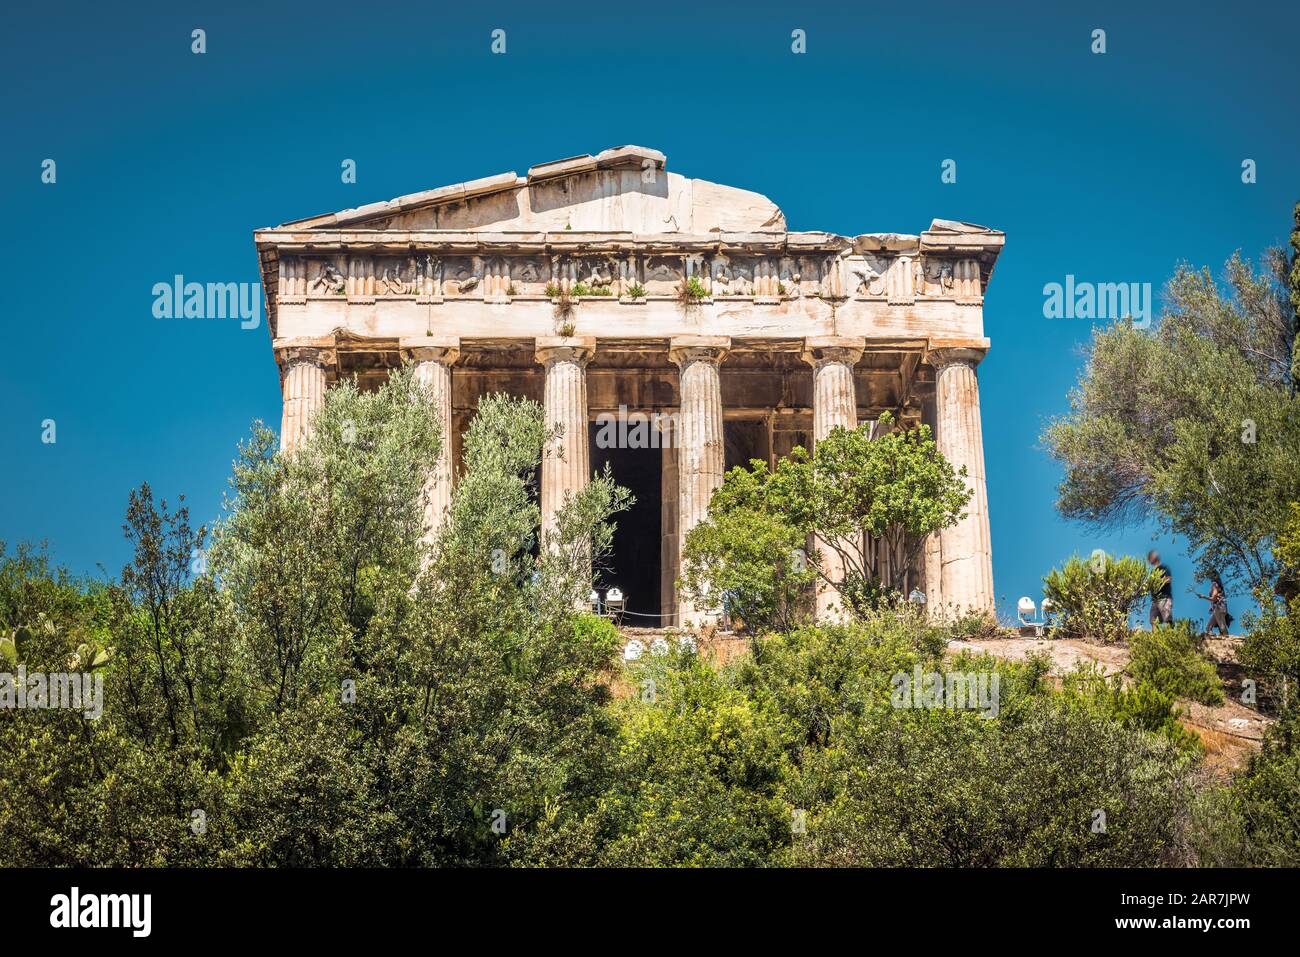 Tempel des Hephaestus in Agora, Athen, Griechenland. Es ist eine der wichtigsten Touristenattraktionen Athens. Malerische Aussicht auf den antiken griechischen Tempel von Hephaes Stockfoto